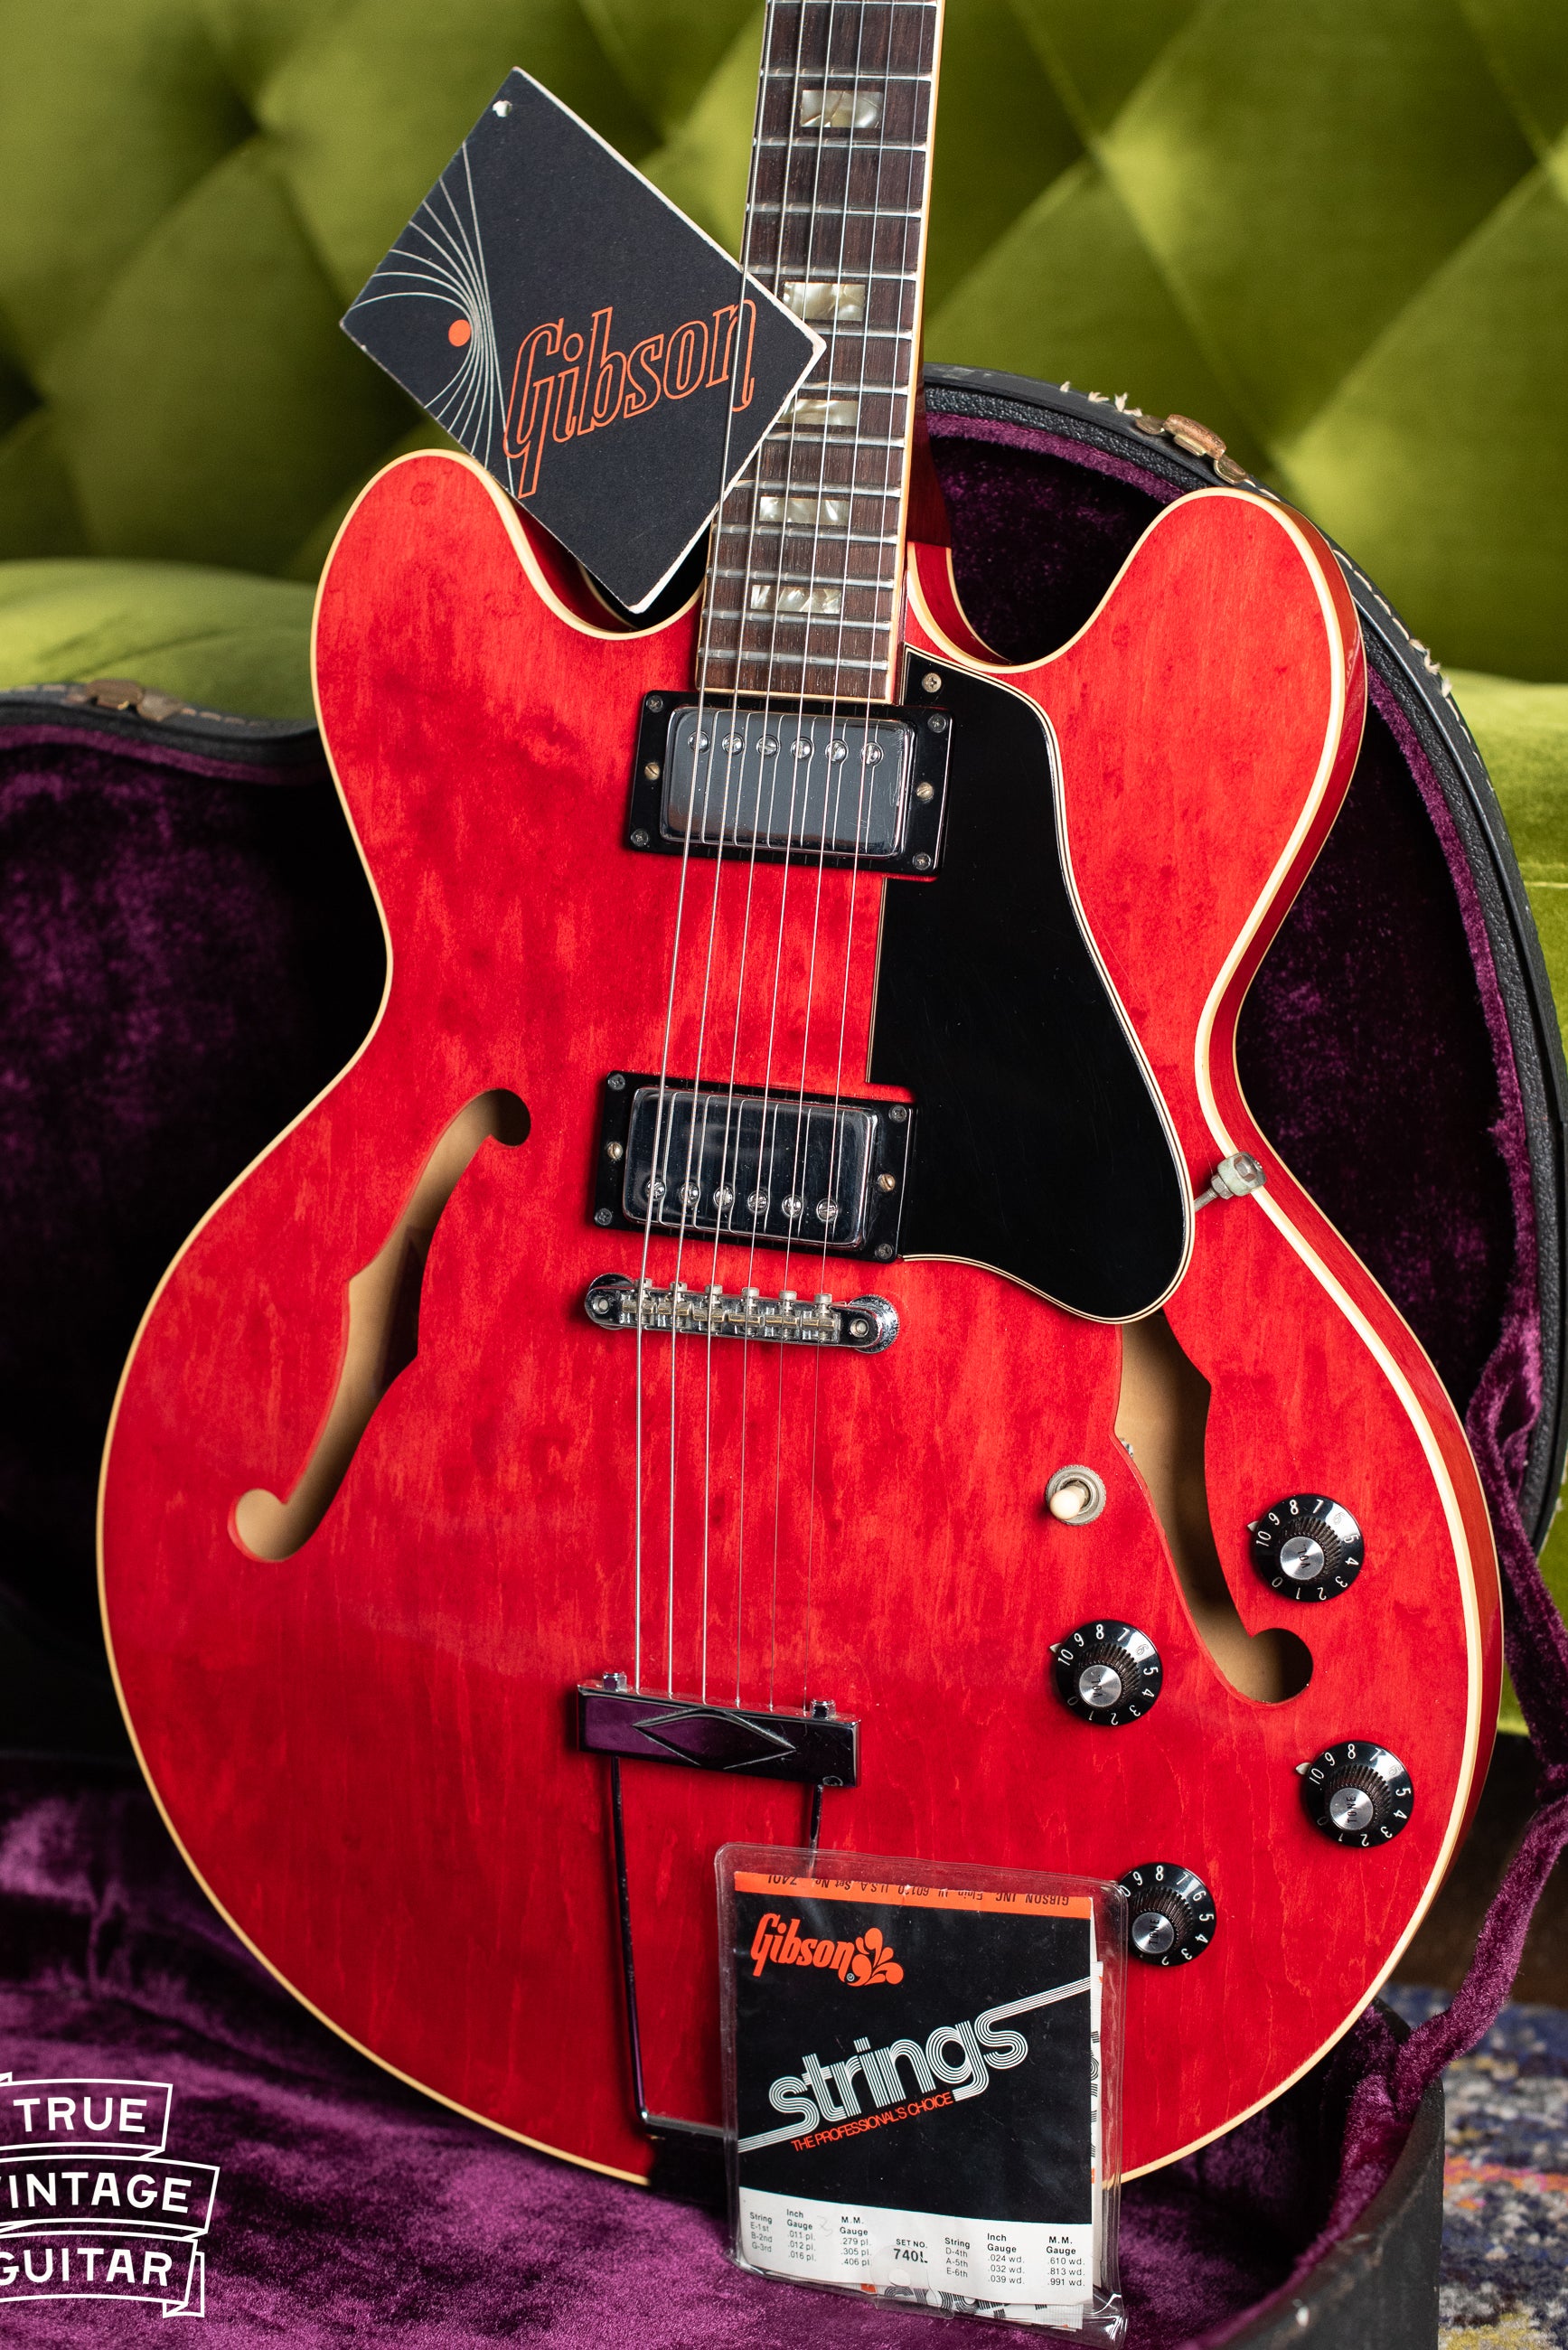 Vintage 1973 Gibson ES-335 Cherry guitar